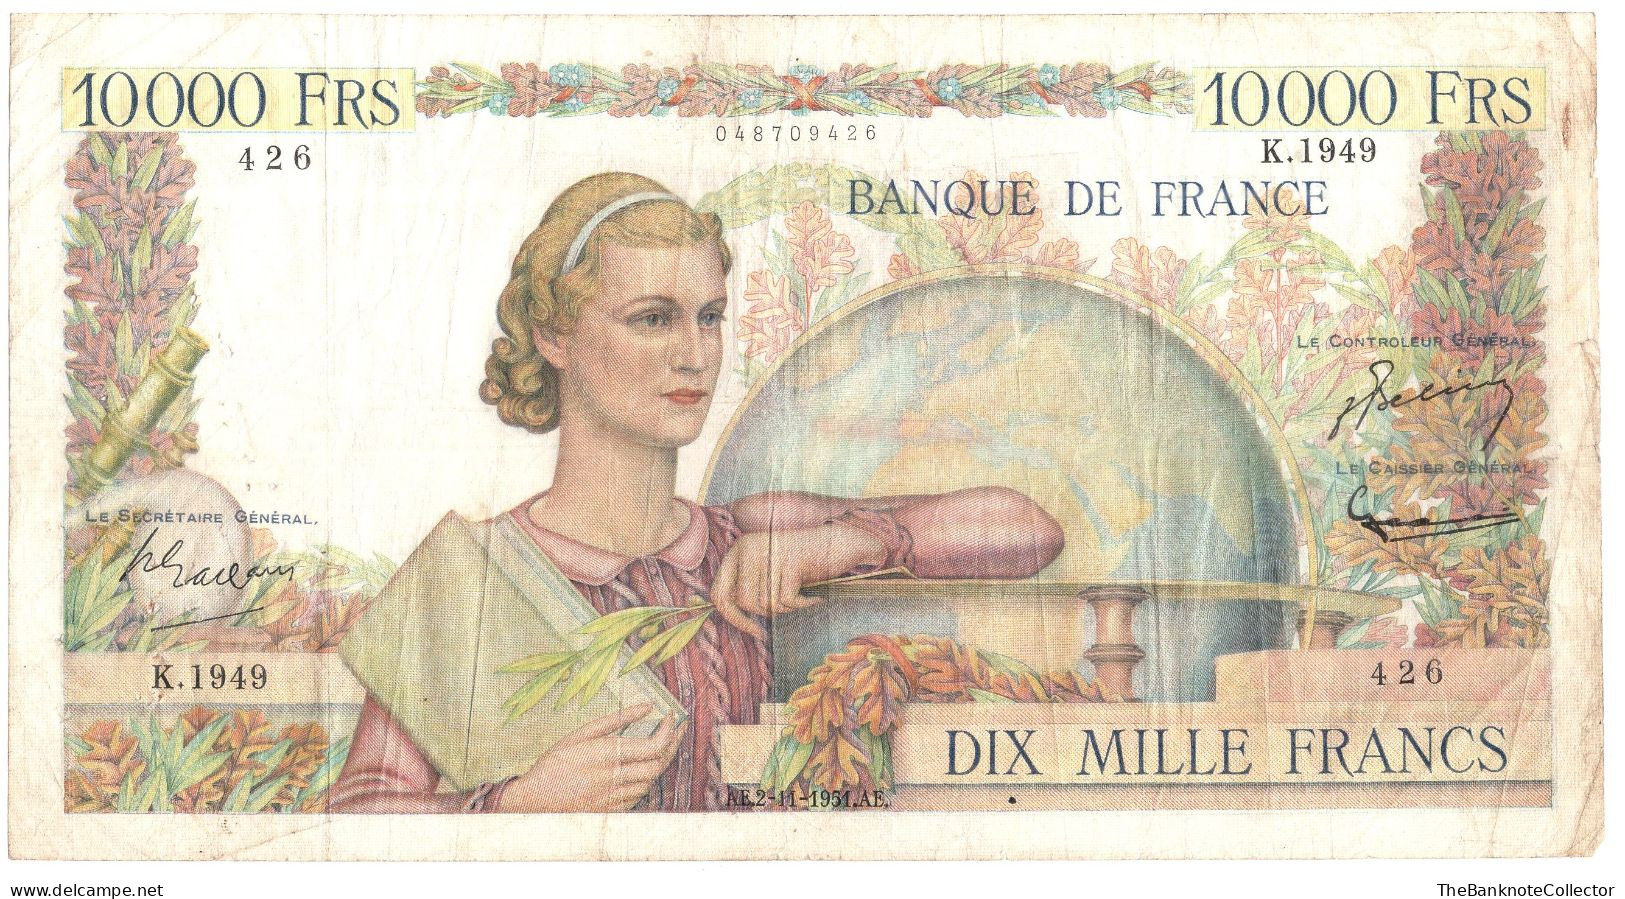 France 10000 Francs 1951 P-123 Fine Condition - 10 000 F 1945-1956 ''Génie Français''